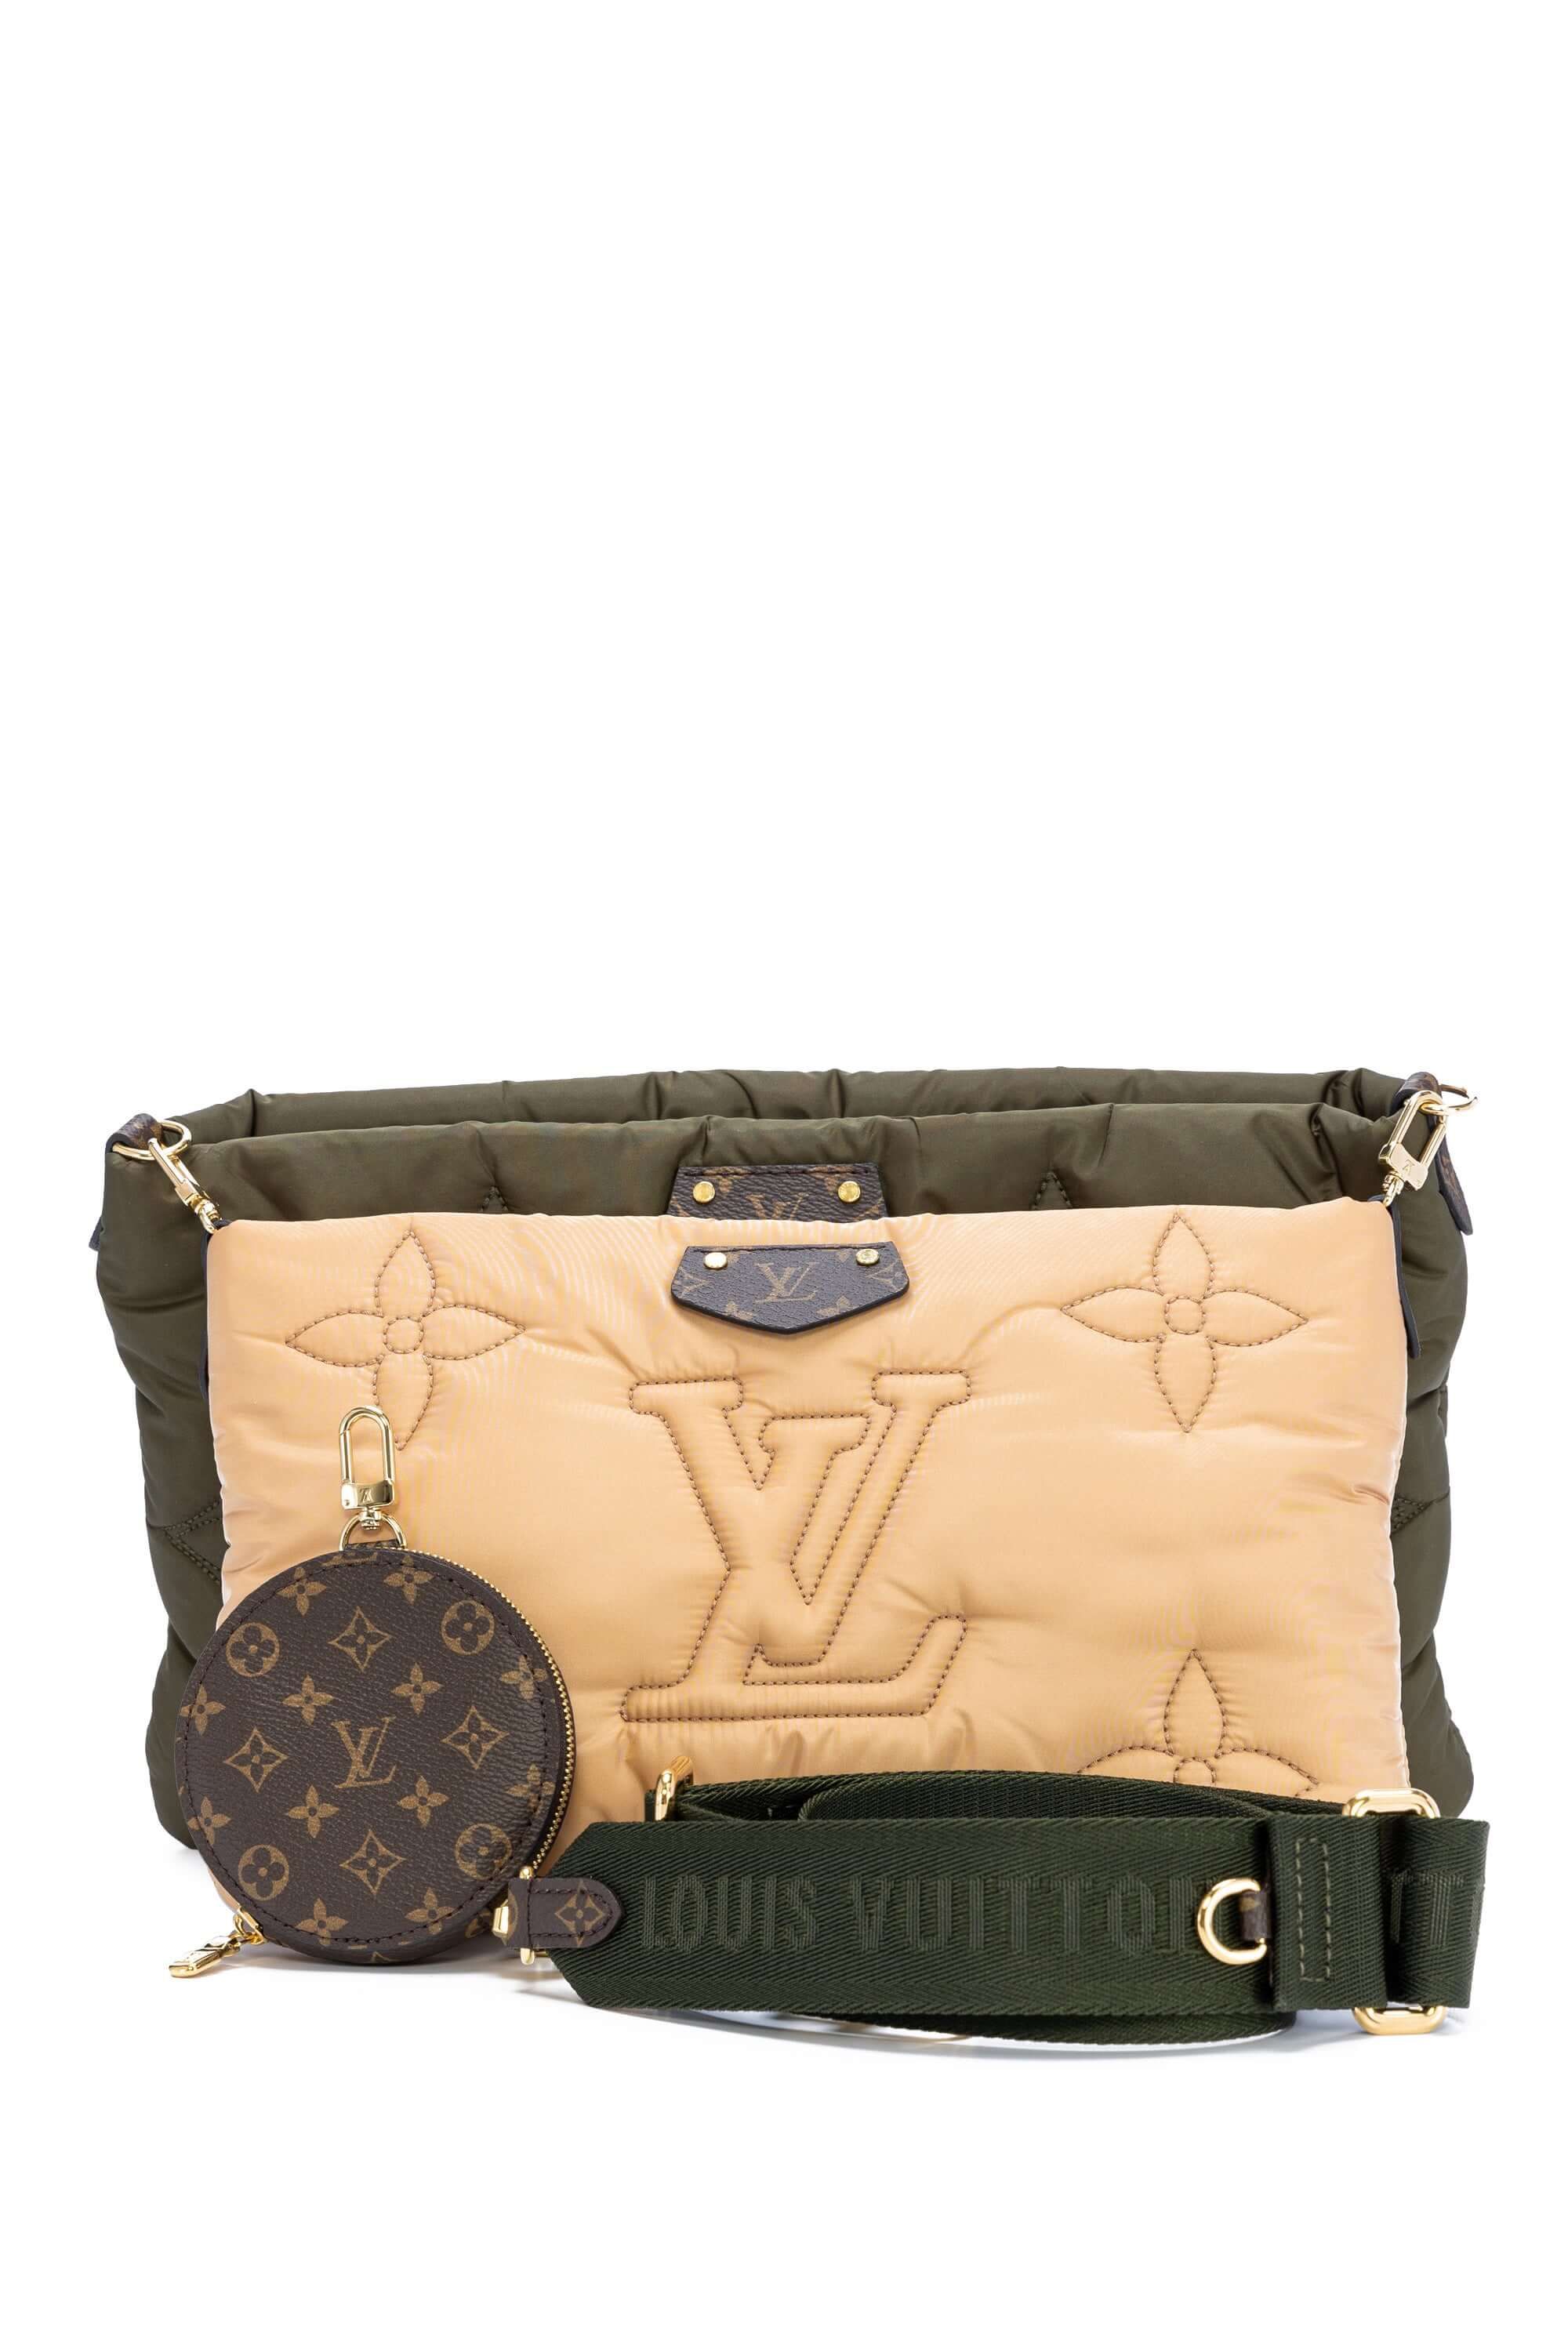 Shop Louis Vuitton Maxi Multi Pochette Accessoires (M58977, M58980) by  CITYMONOSHOP